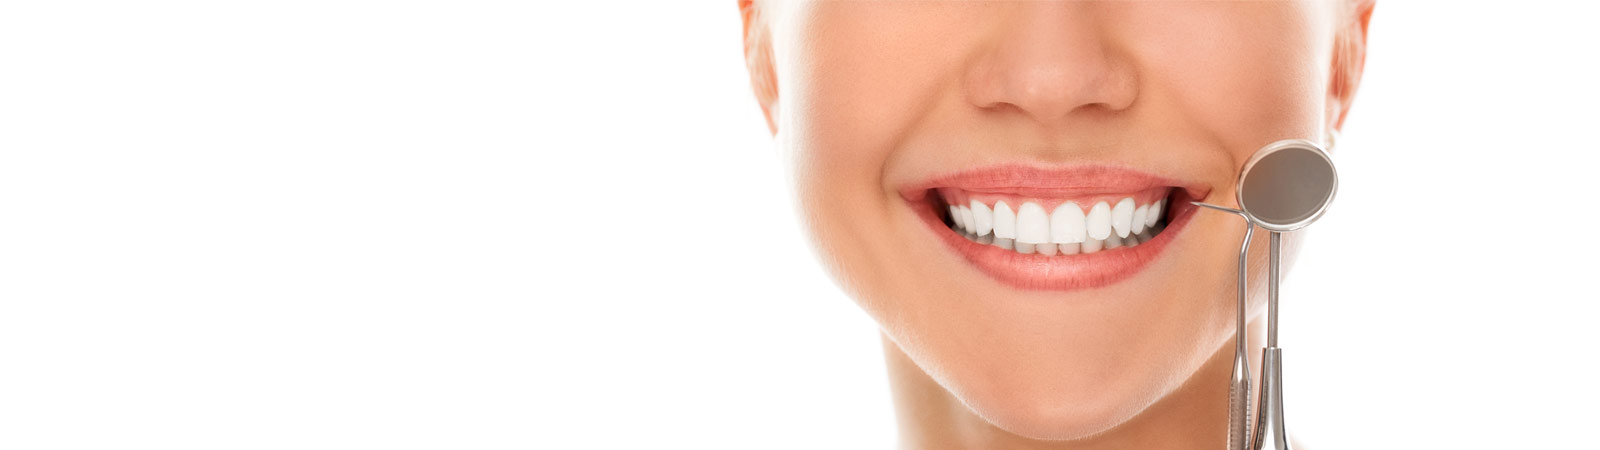 Smiling woman at a dental